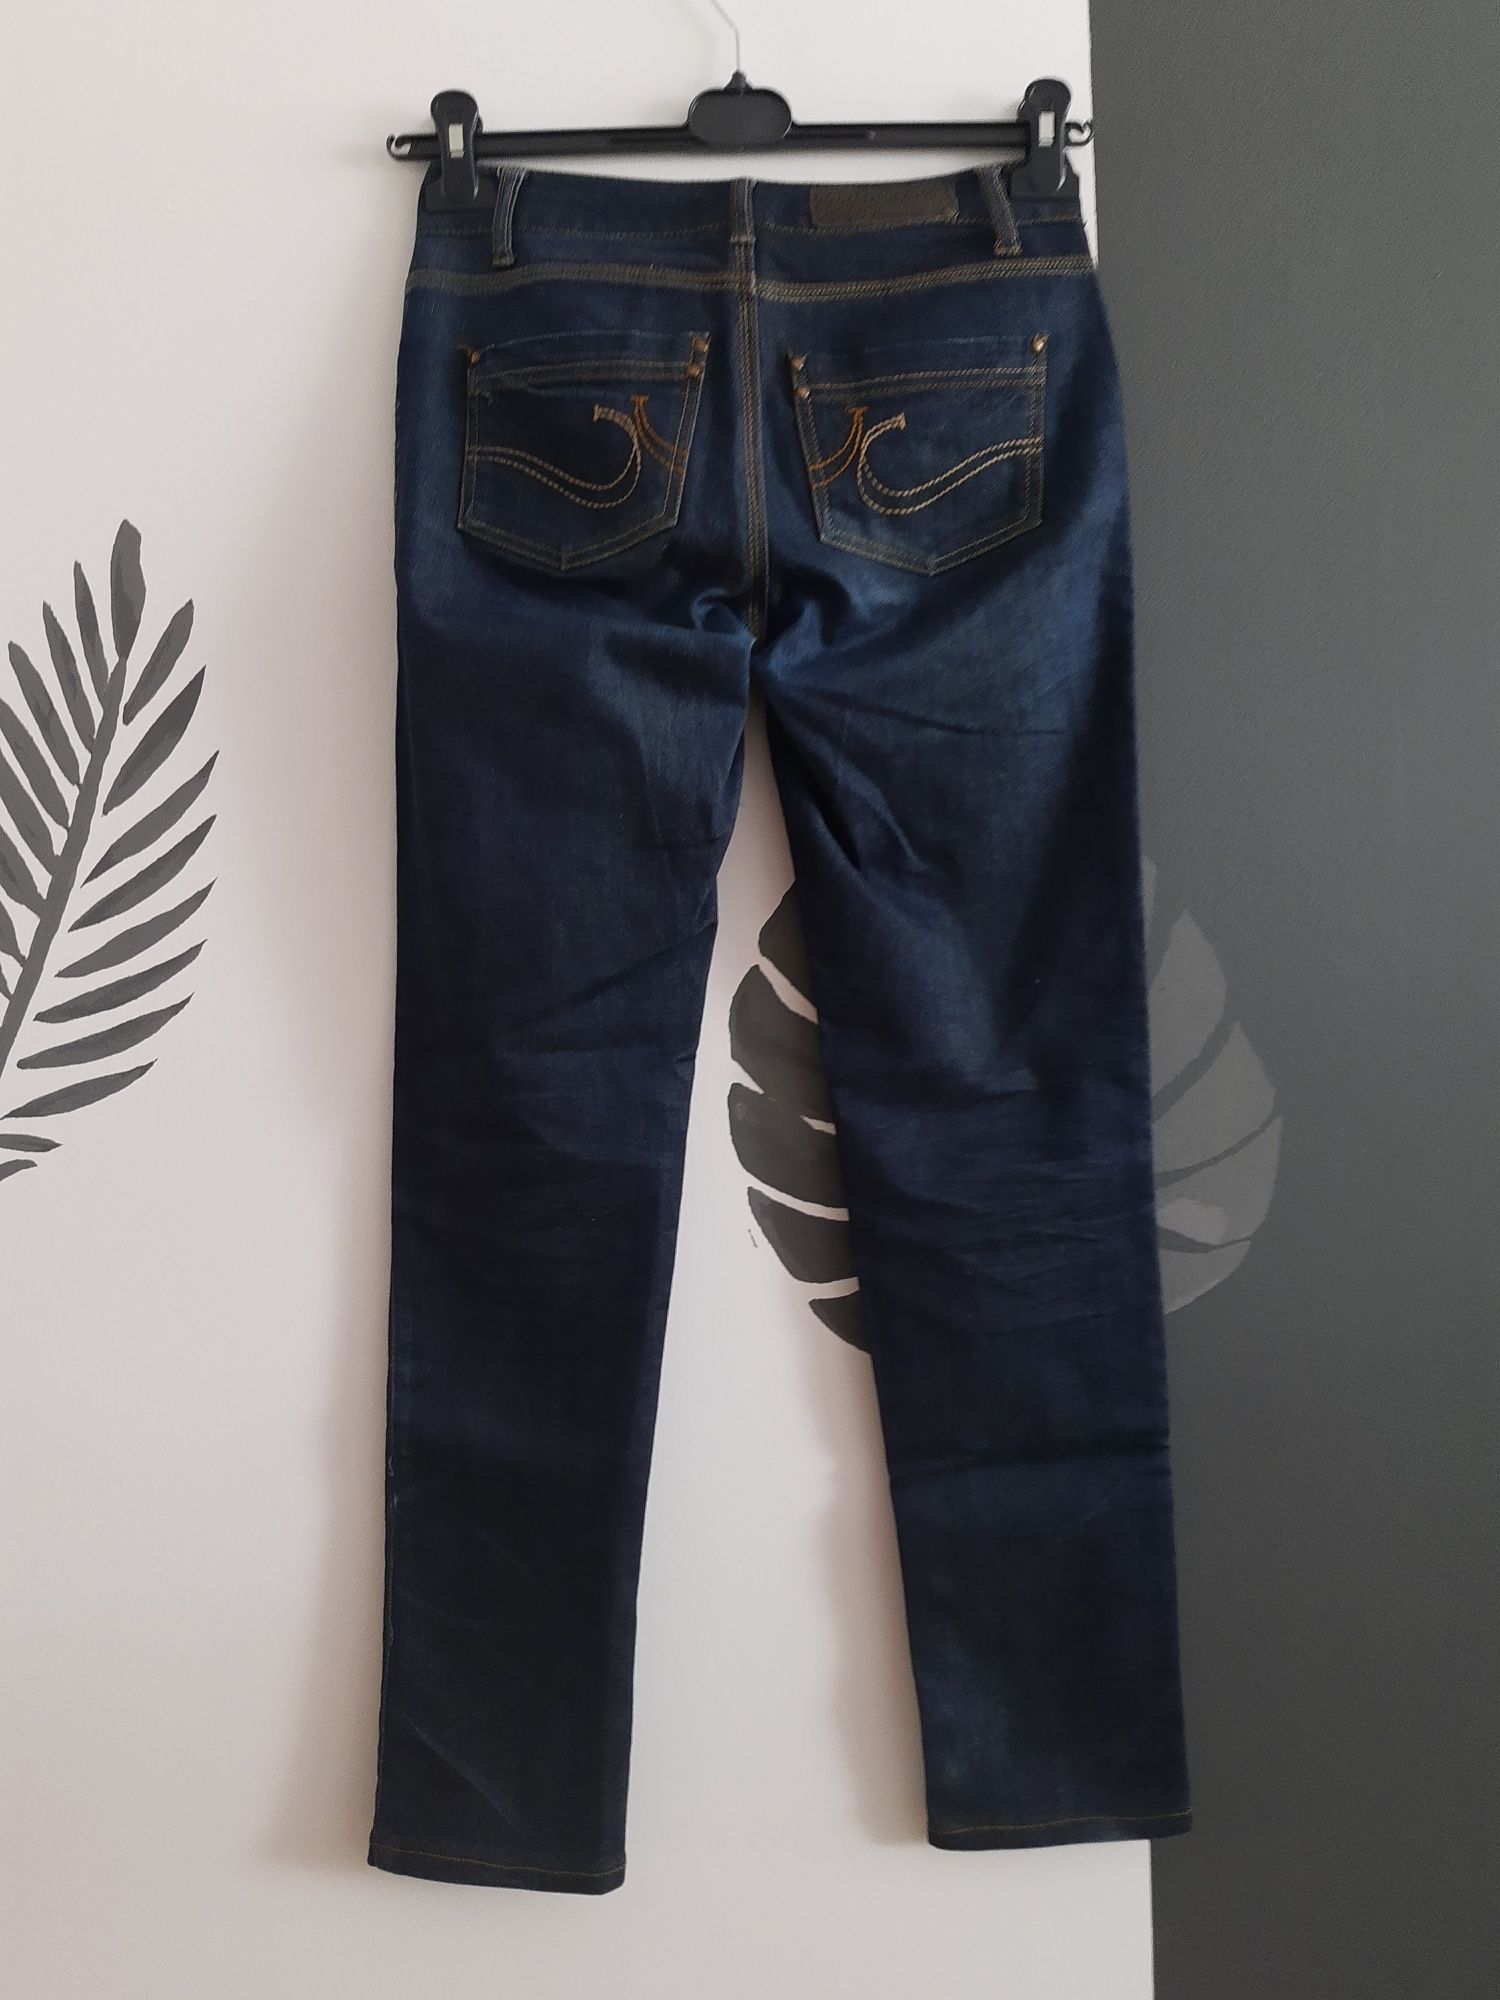 Spodnie jeans 34